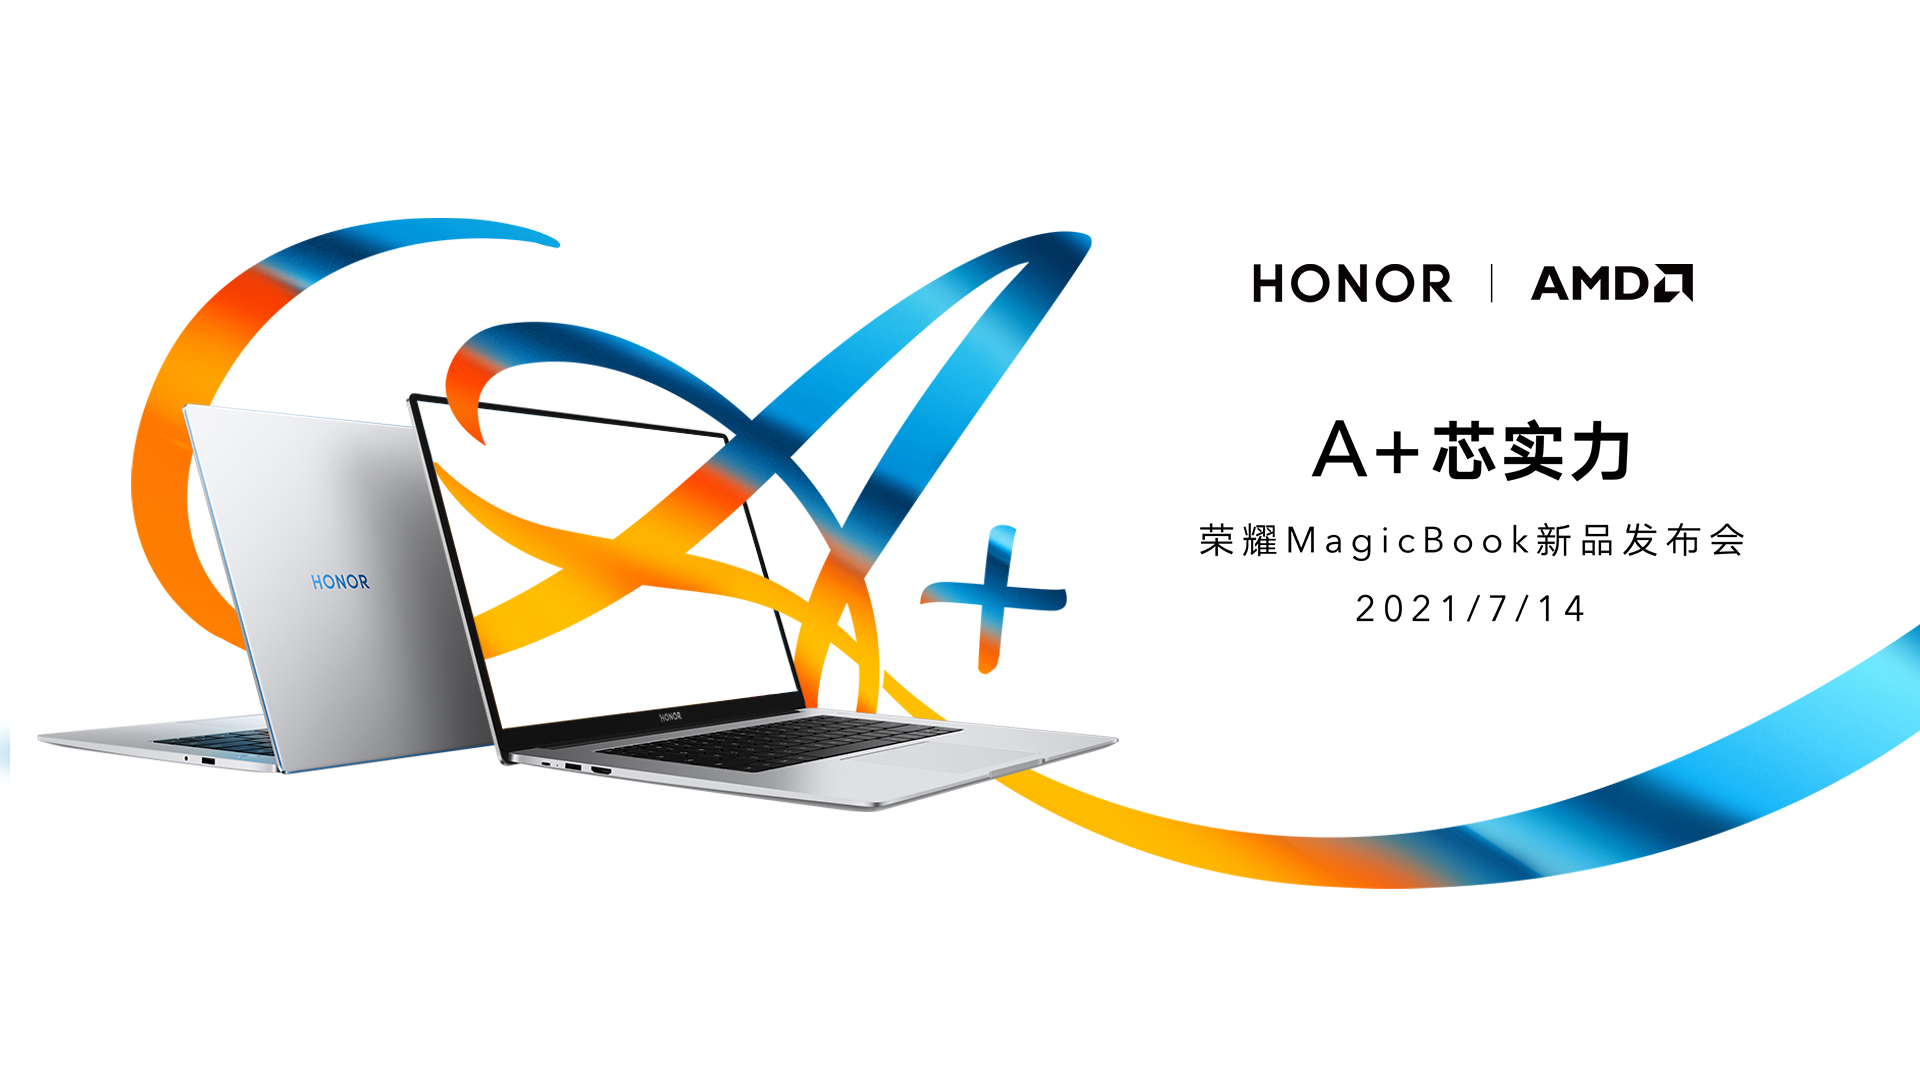 A+芯实力 荣耀 MagicBook系列新品发布会